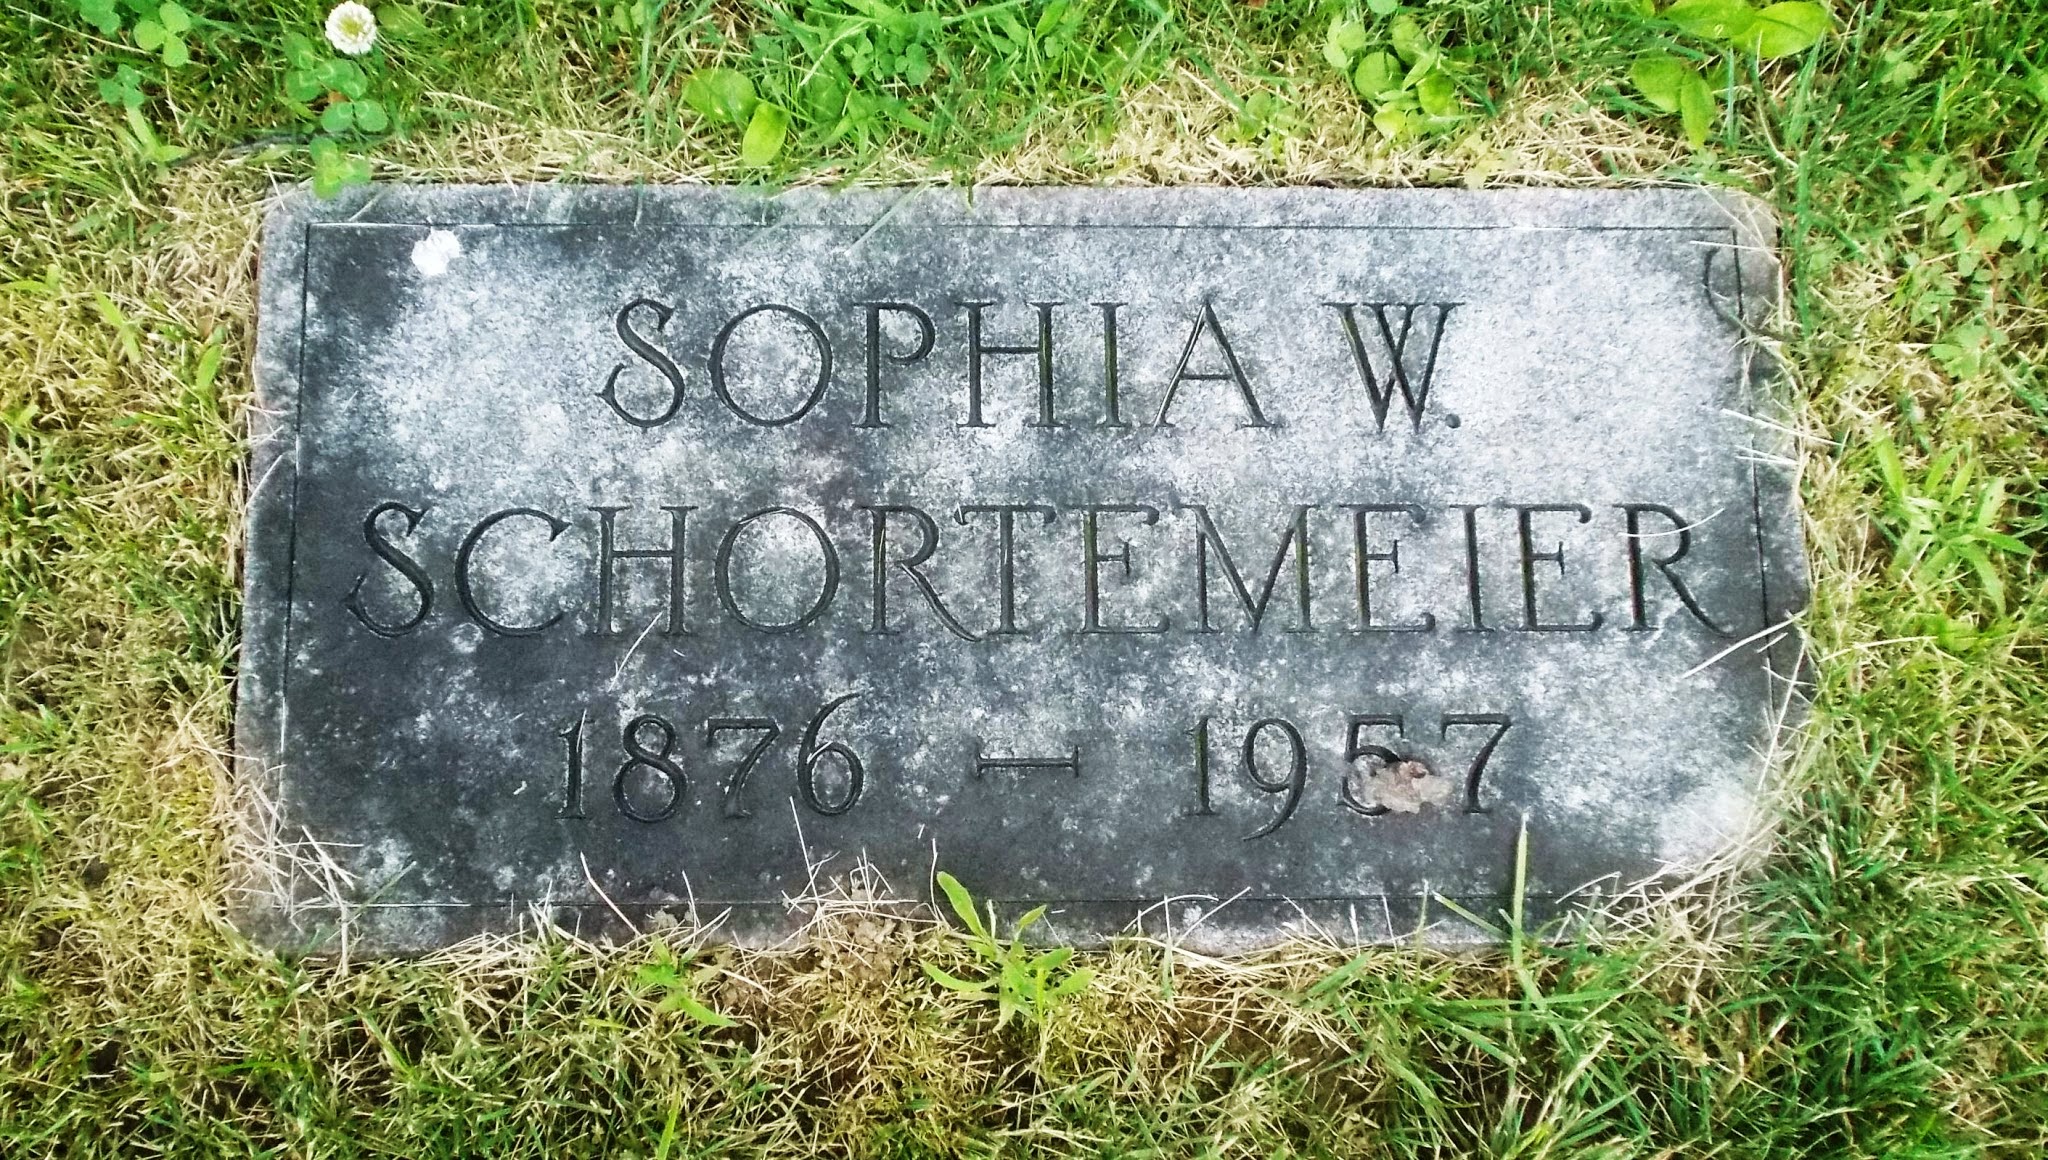 Sophia W Schortemeier